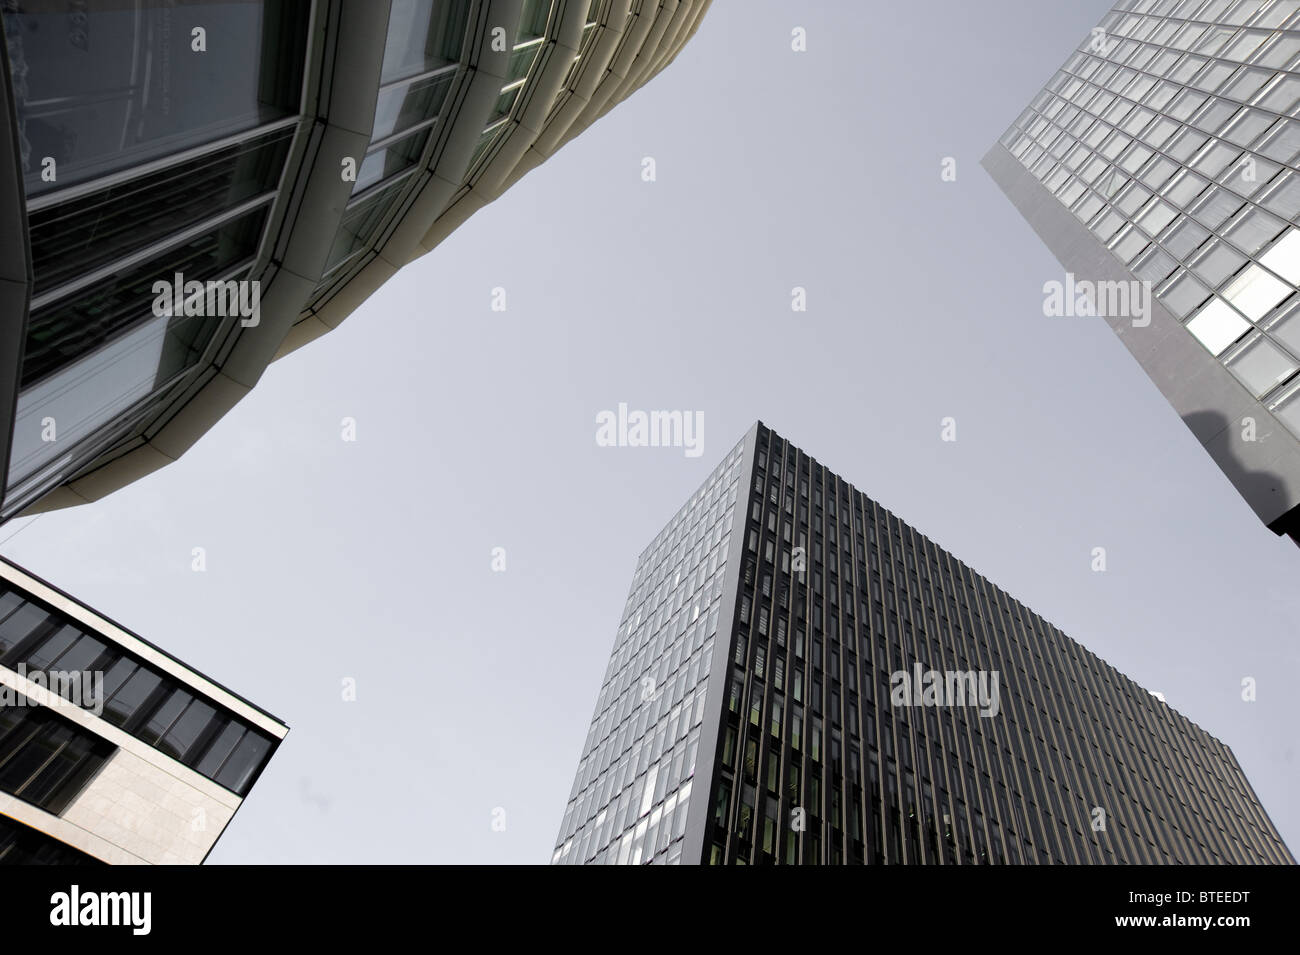 Détails de l'architecture moderne ronde et coudée dans le Medienhafen de Düsseldorf, Allemagne. Banque D'Images